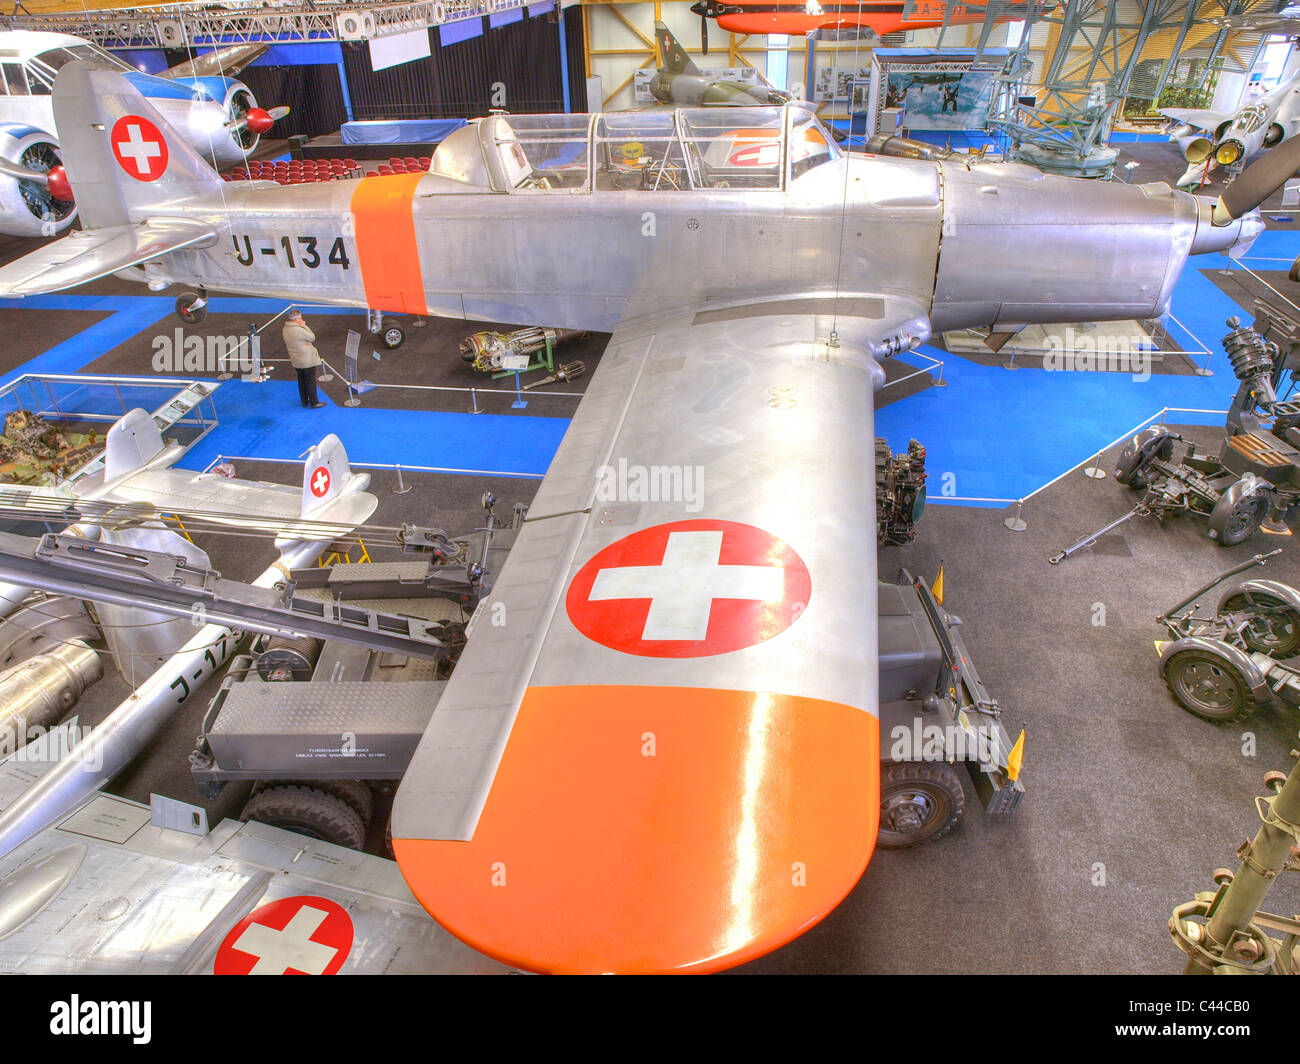 Les avions, l'aviateur's museum, musée, village9, le canton de Zurich, Suisse, les avions militaires, anciens, l'aviation Banque D'Images